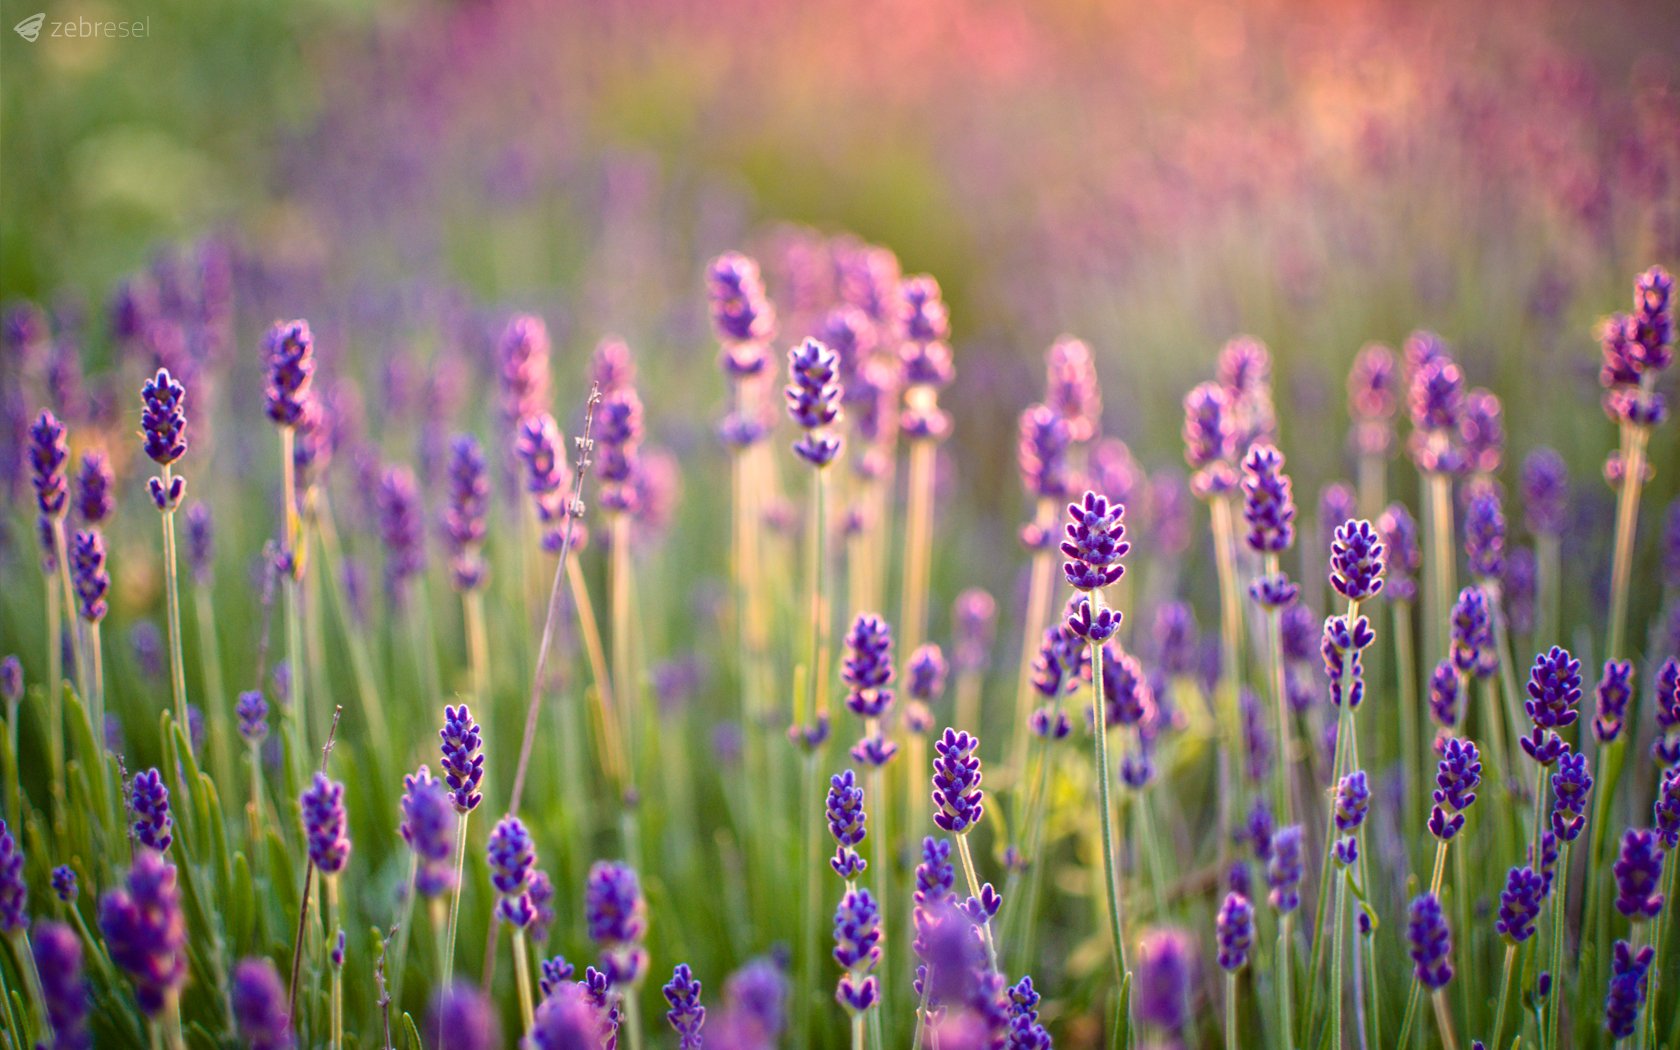 Lavender hoa oải hương: Hoa oải hương là một gợi ý tuyệt vời trong việc phối hợp màu sắc và vật liệu cho căn nhà của bạn. Với hình ảnh lavender hoa oải hương, bạn sẽ được truyền cảm hứng để khai thác hoa để tạo ra một không gian ngập tràn sự thanh tịnh và tinh tế. Bạn sẽ không thể cưỡng lại được sức hút đầy mê hoặc của một bức tranh về lavender hoa oải hương.